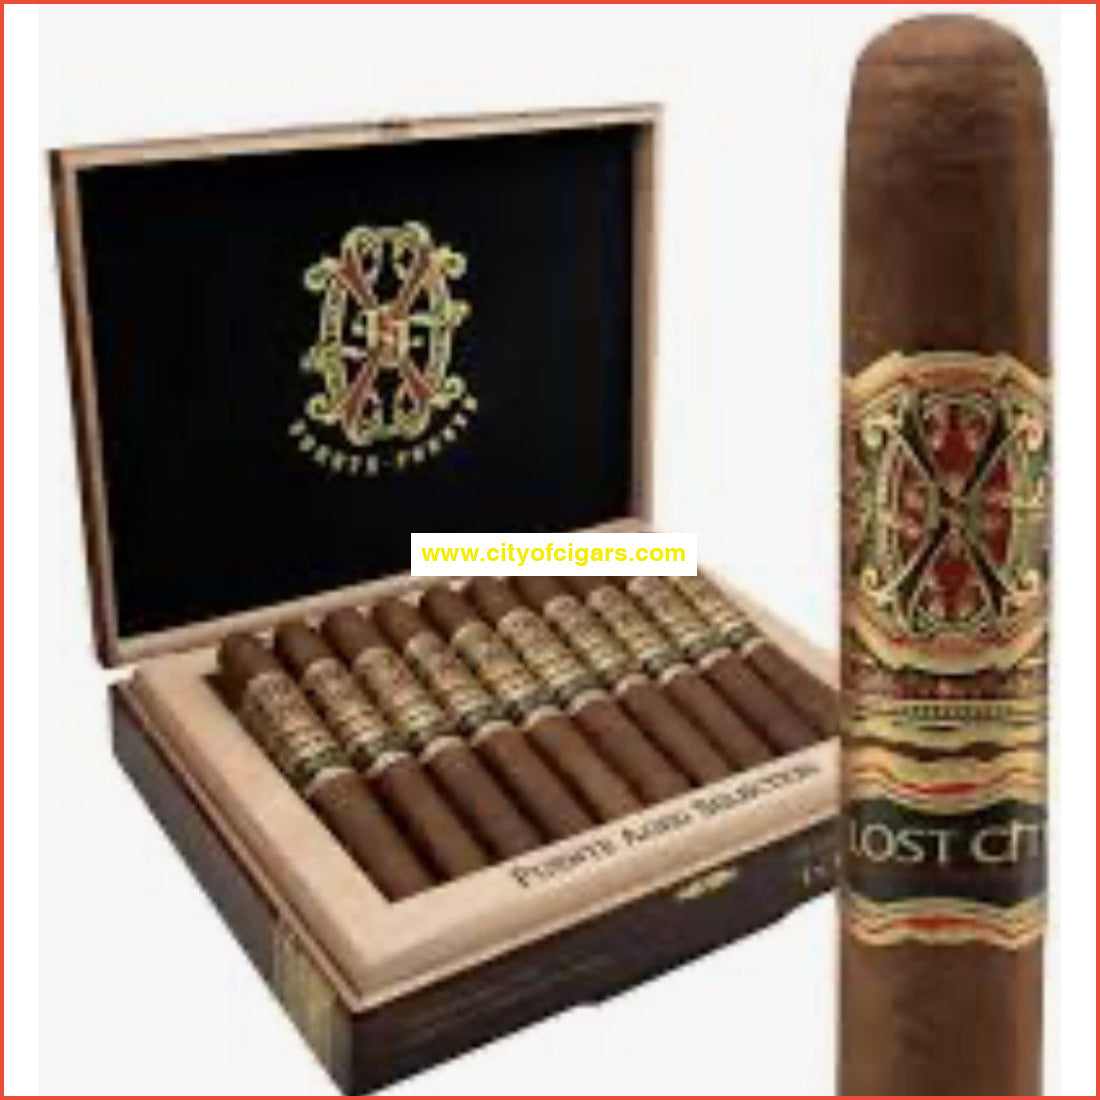 Arturo Fuente Lost City Double Robusto Cigars